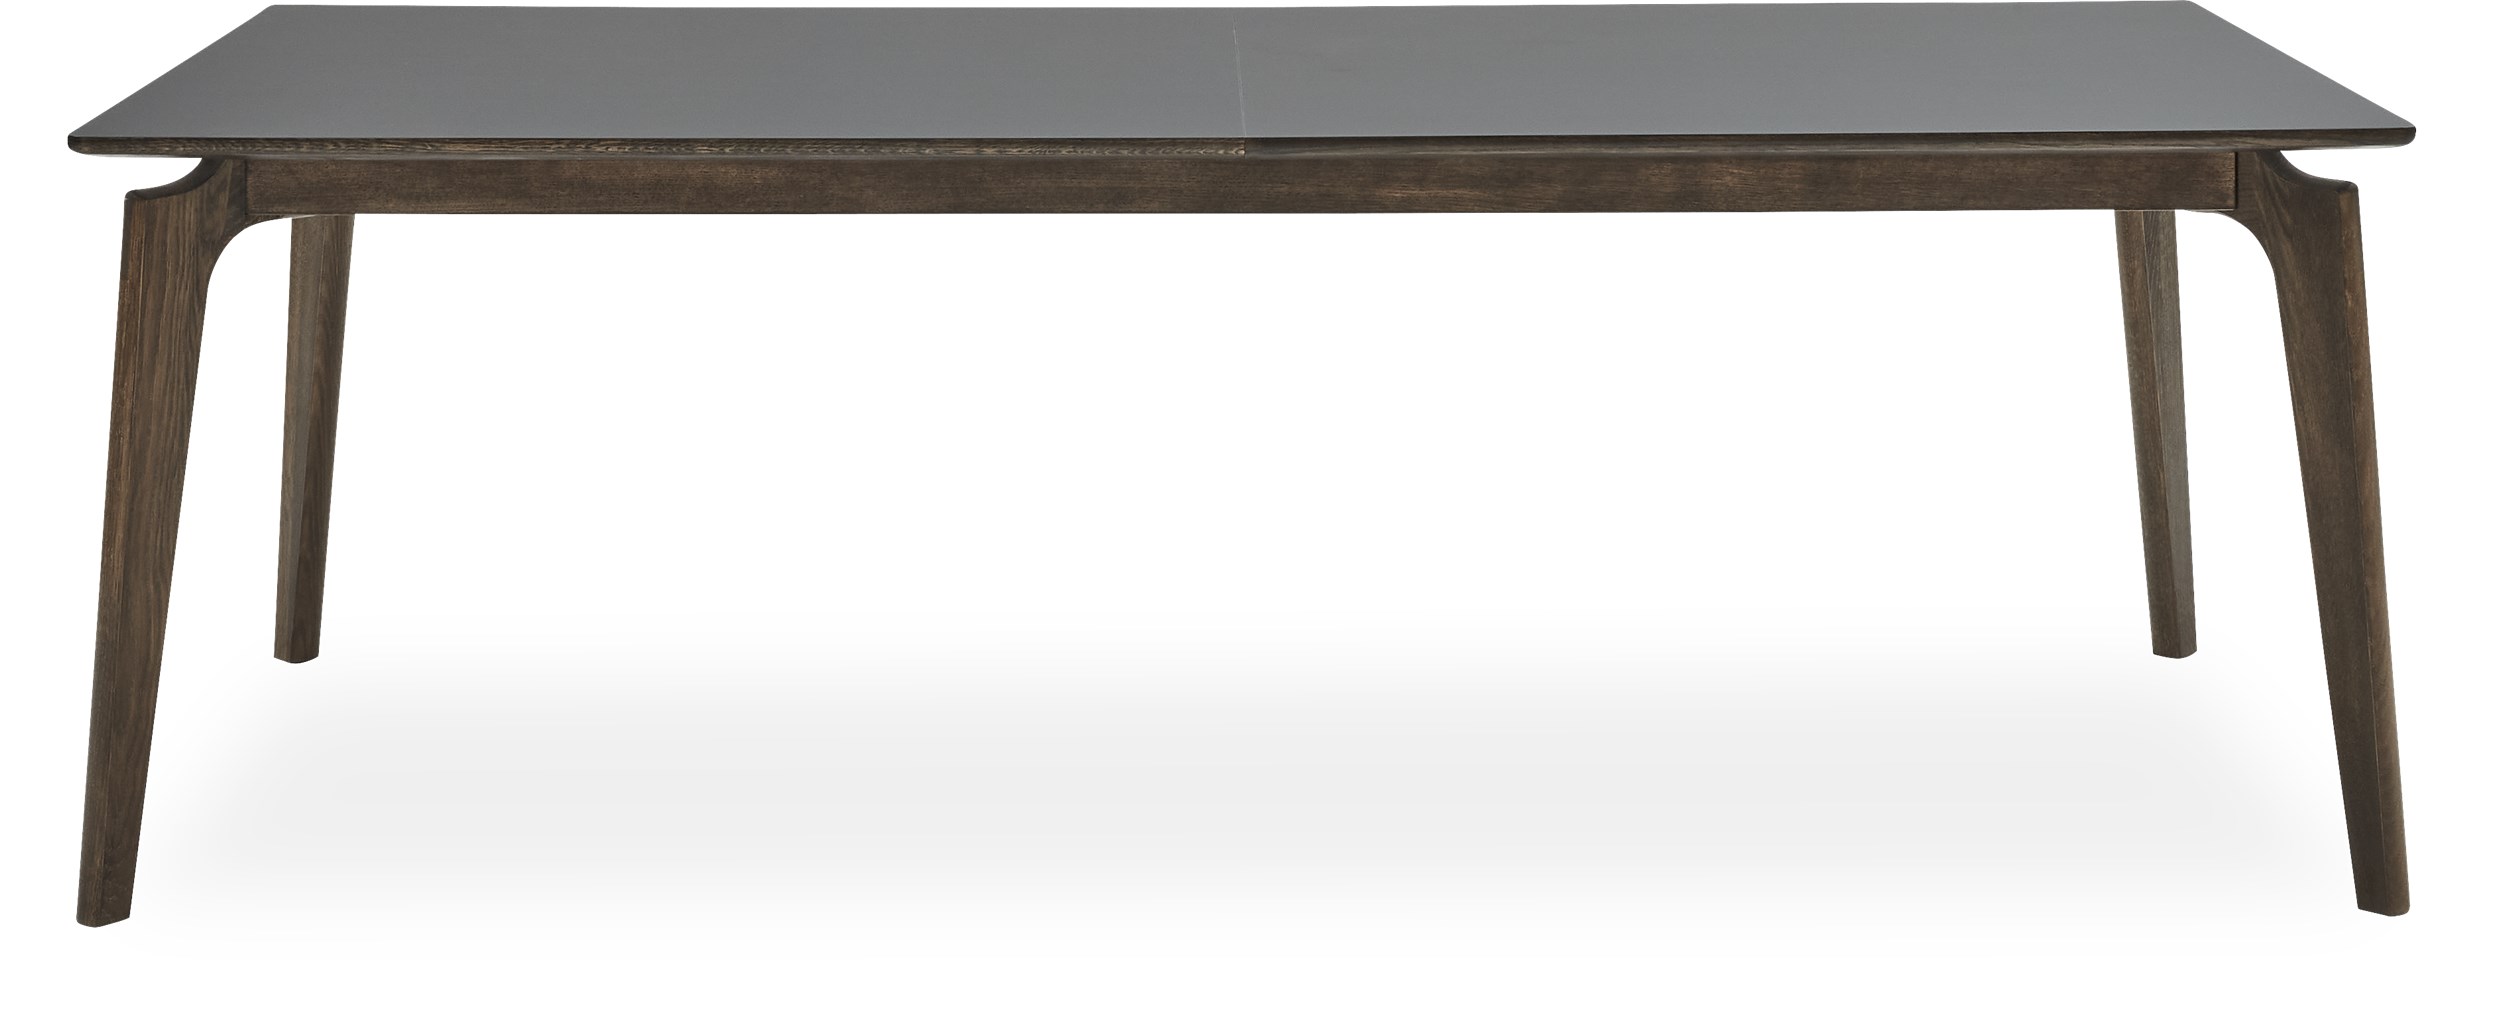 Edge Spisebord 220 x 95 x 74 cm - 204 Deep black nanolaminat, kant i røgfarvet matlakeret eg og ben i røget matlak. massiv eg